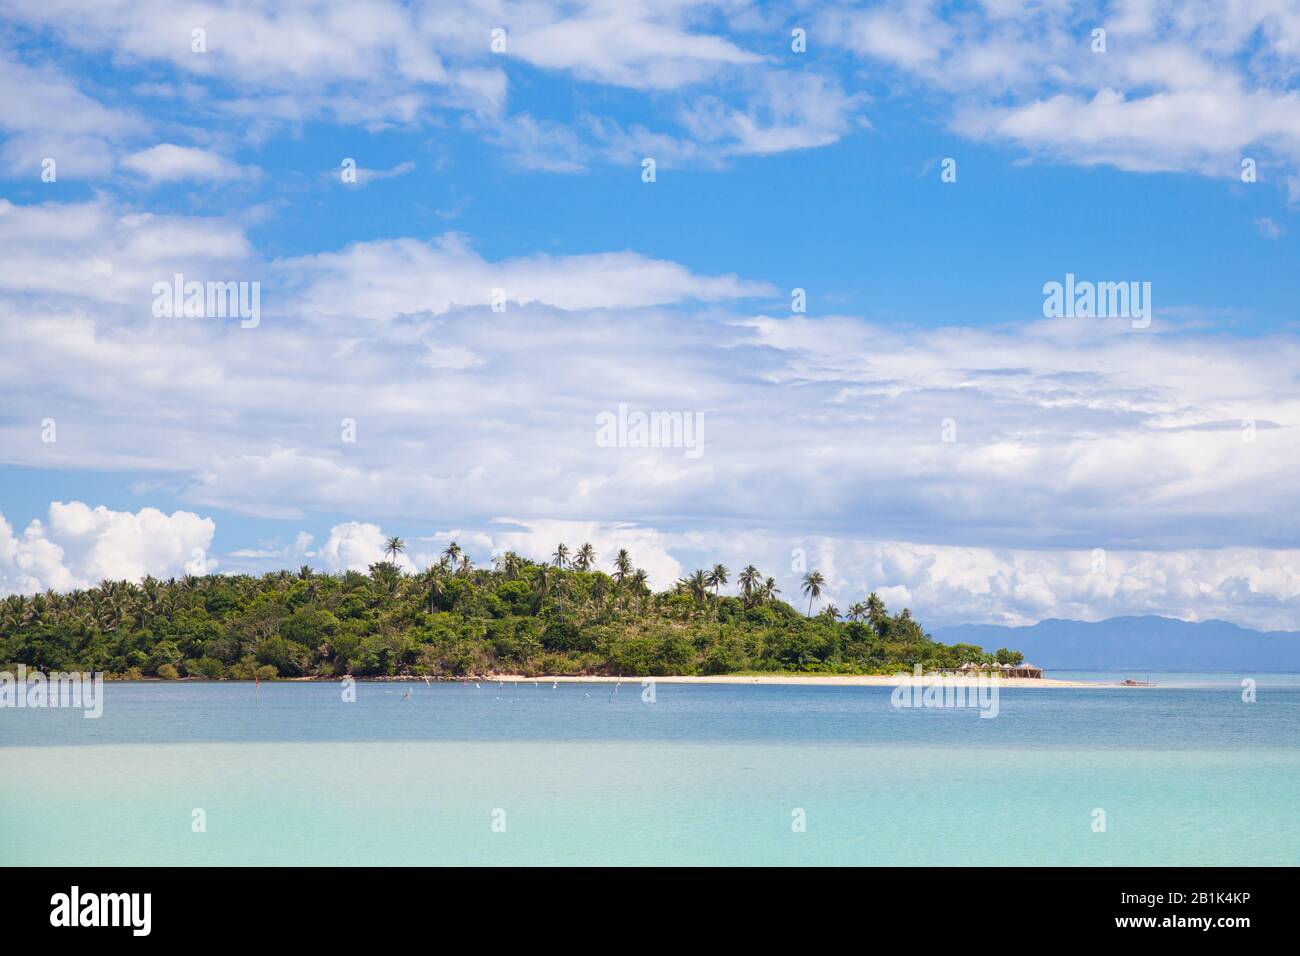 Île tropicale avec une plage de sable blanc. Îles Caramoan, Philippines. Banque D'Images